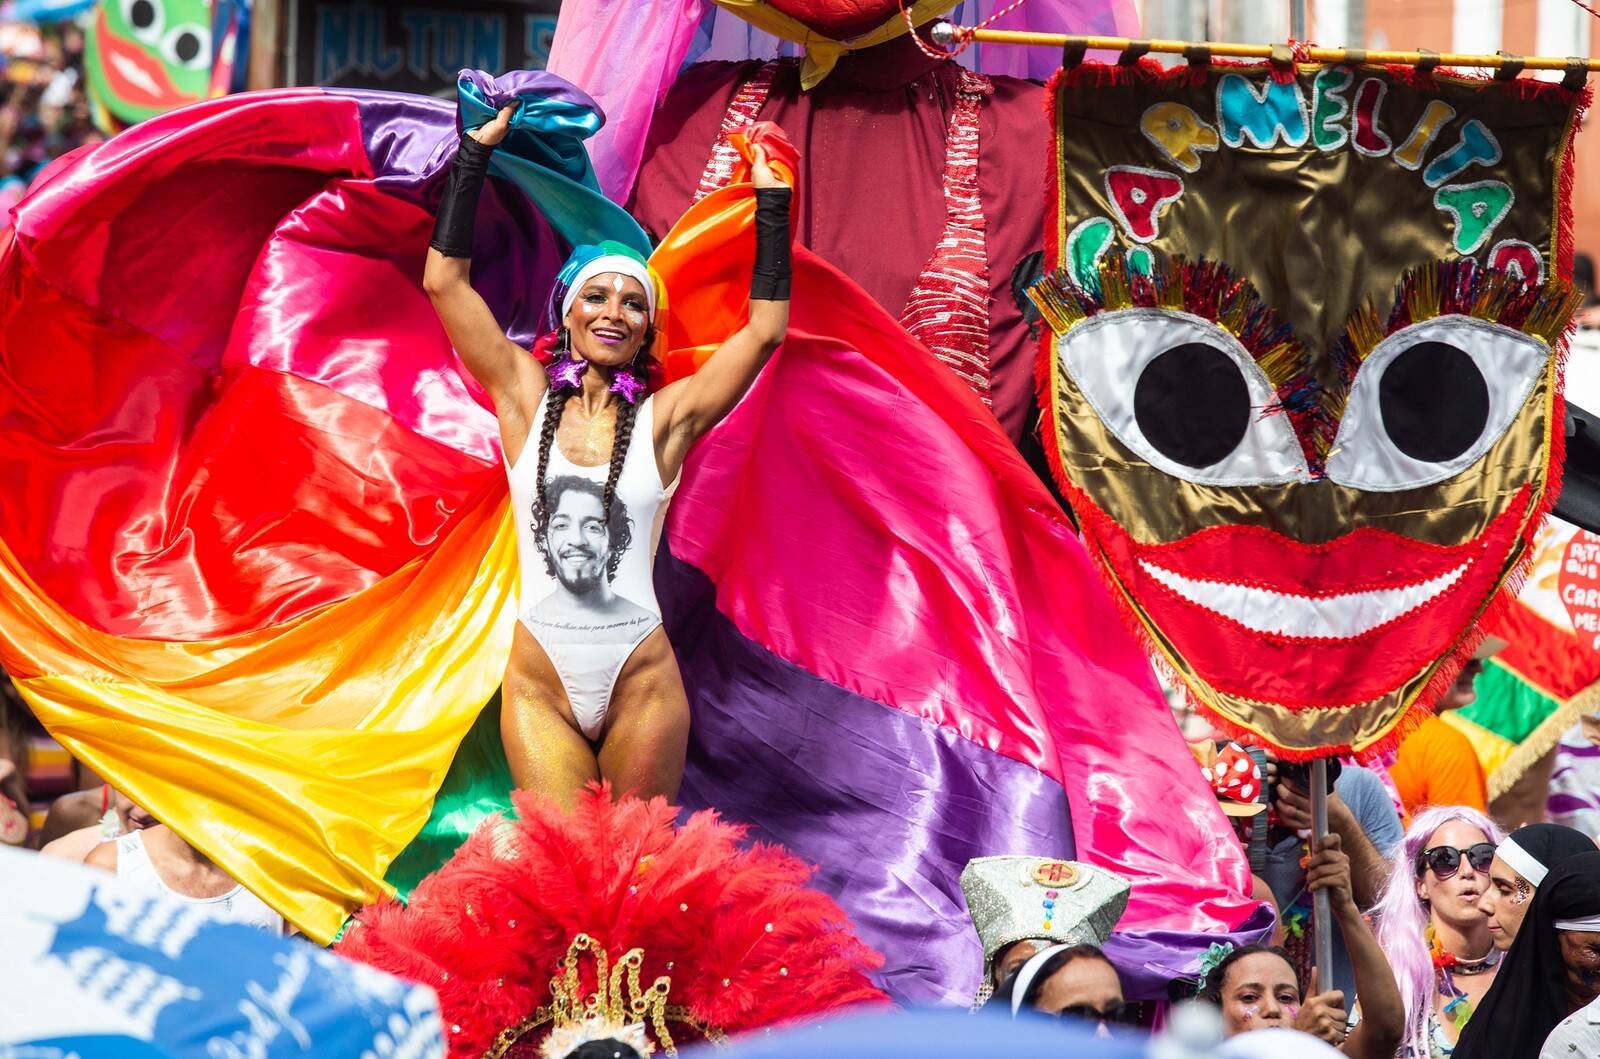 fantasias de carnaval fazem críticas políticas. Foto: Reprodução / Instagram / Twitter